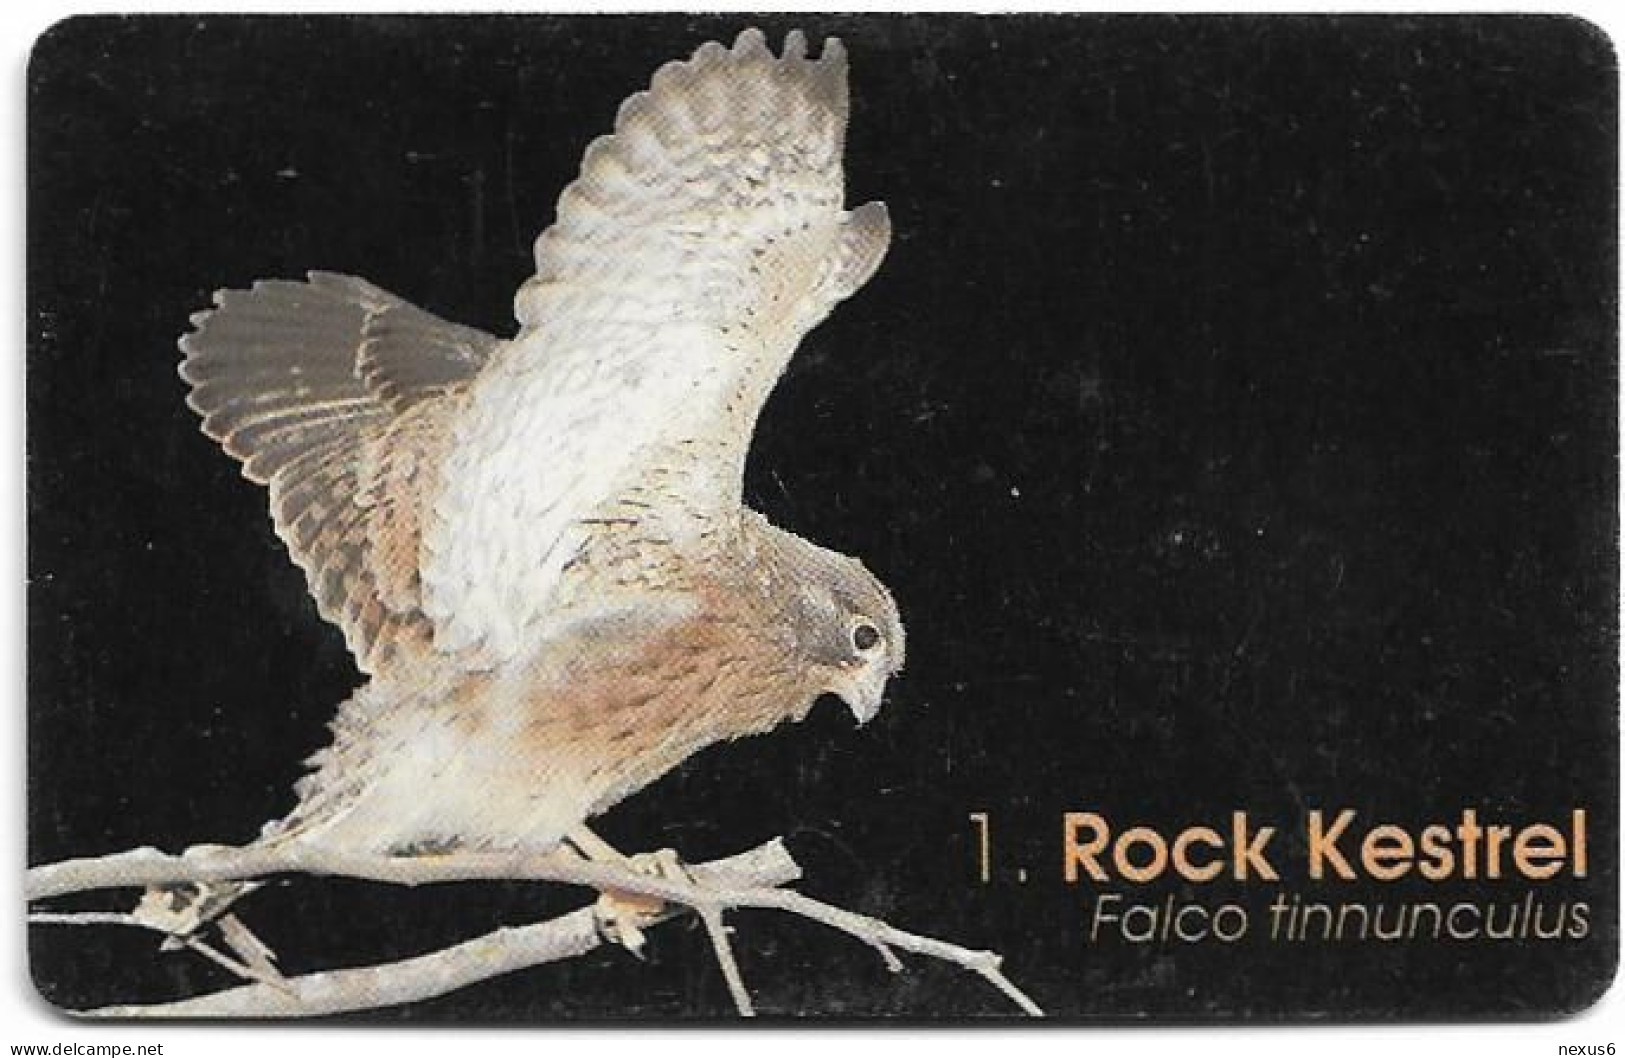 Namibia - Telecom Namibia - Birds Of Namibia, Rock Kestrel - 20$, 1999, Used - Namibie